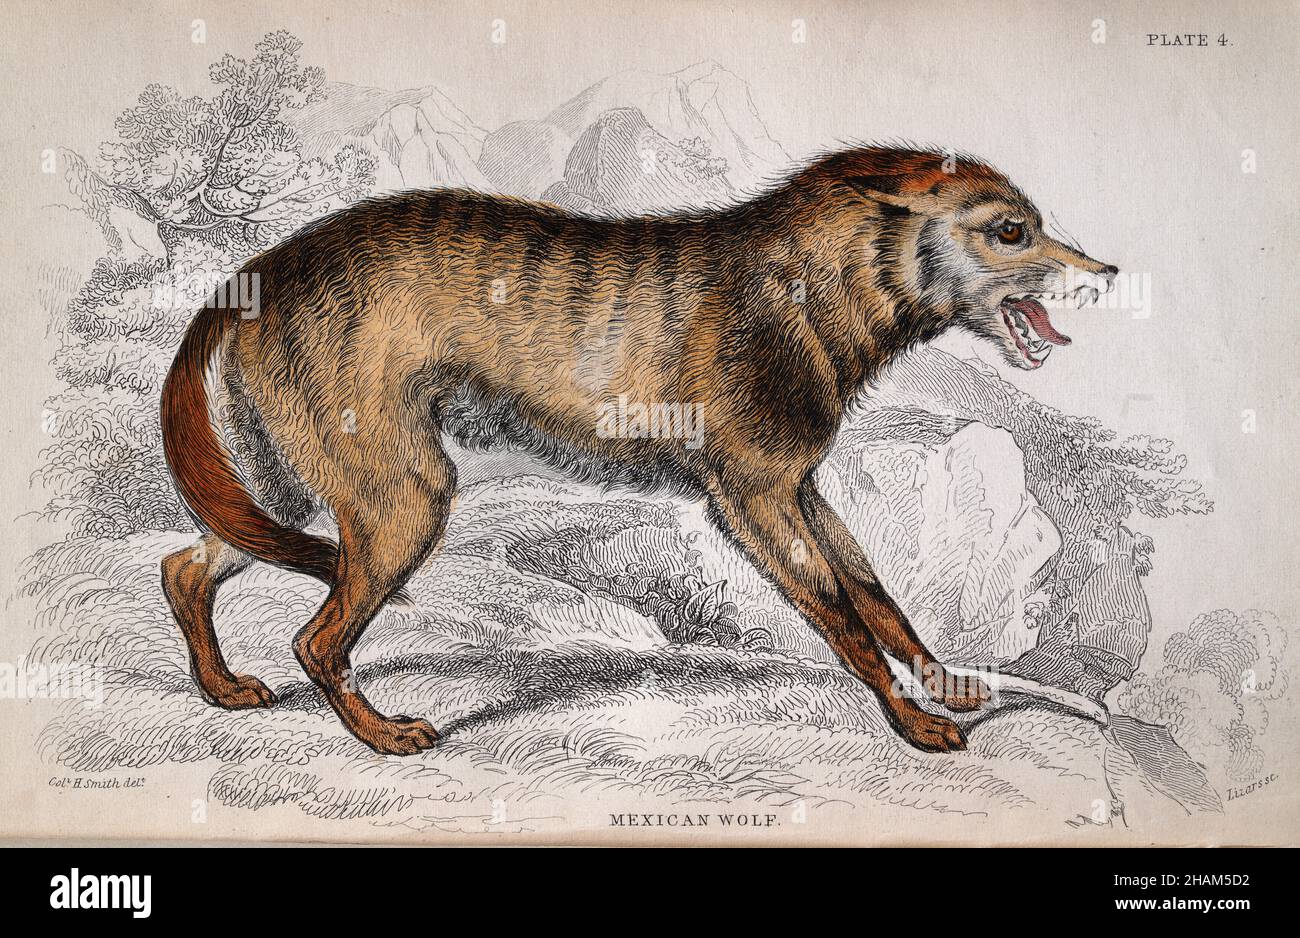 Ilustración vintage de un lobo mexicano, Canis lupus baileyi, o lobo Una subespecie de lobo gris nativa del sudeste de Arizona y el sur de Nuevo México Foto de stock